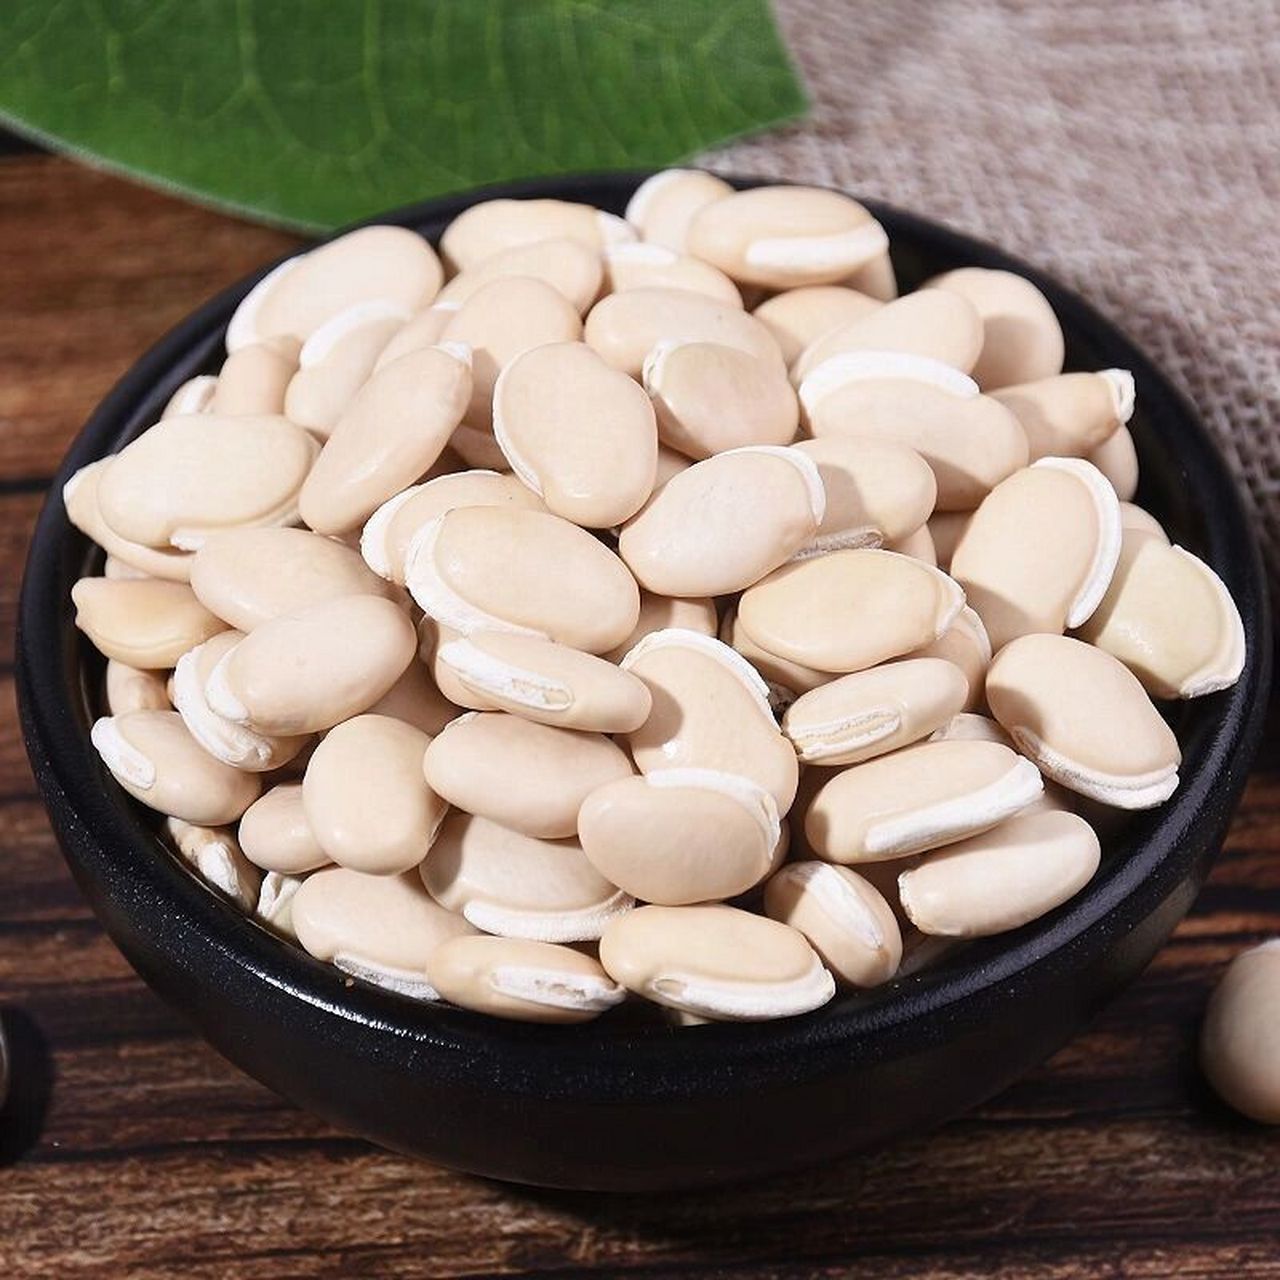 白扁豆可以用于治疗脾胃虚弱,大便泄泻,白带过多,食欲不振,胸闷